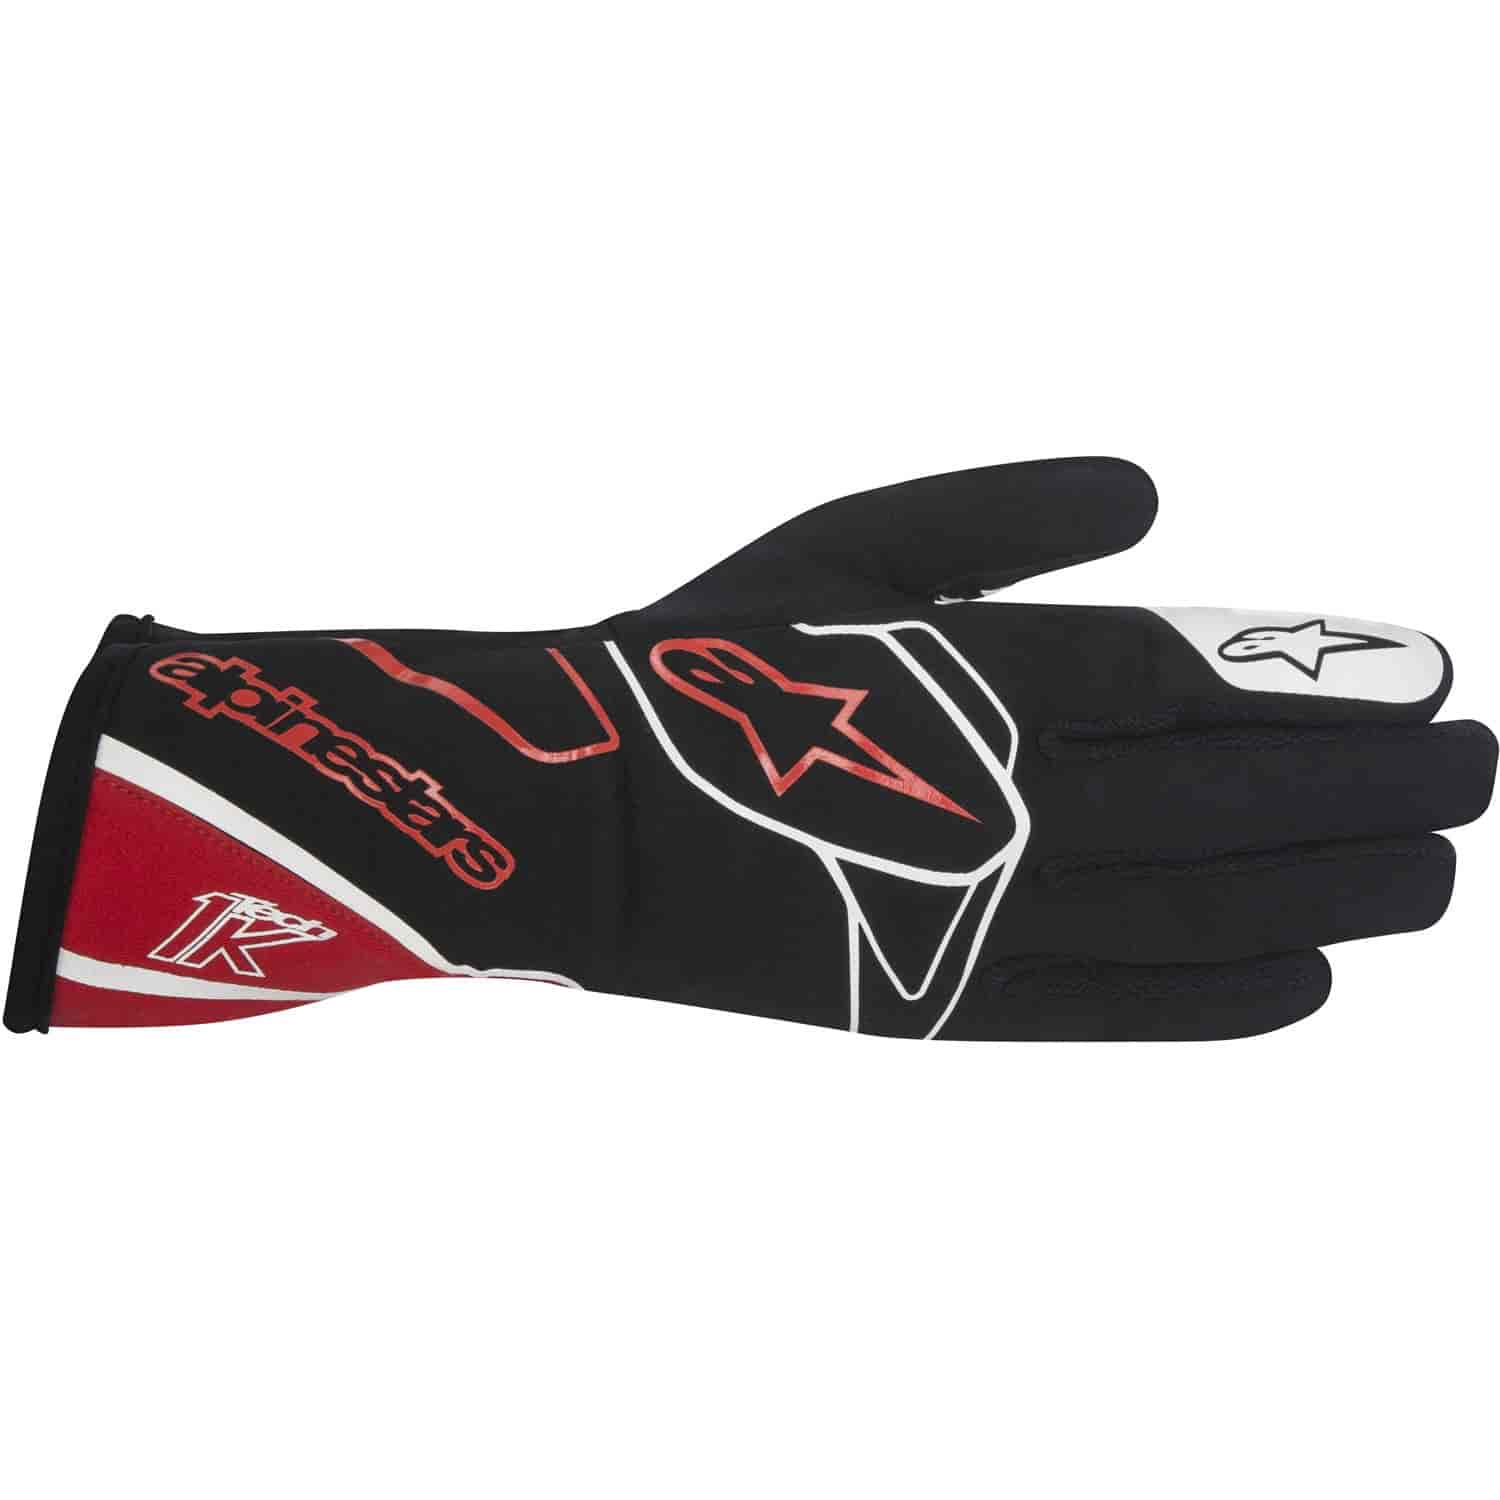 Tech 1-K Gloves Black/Red/White